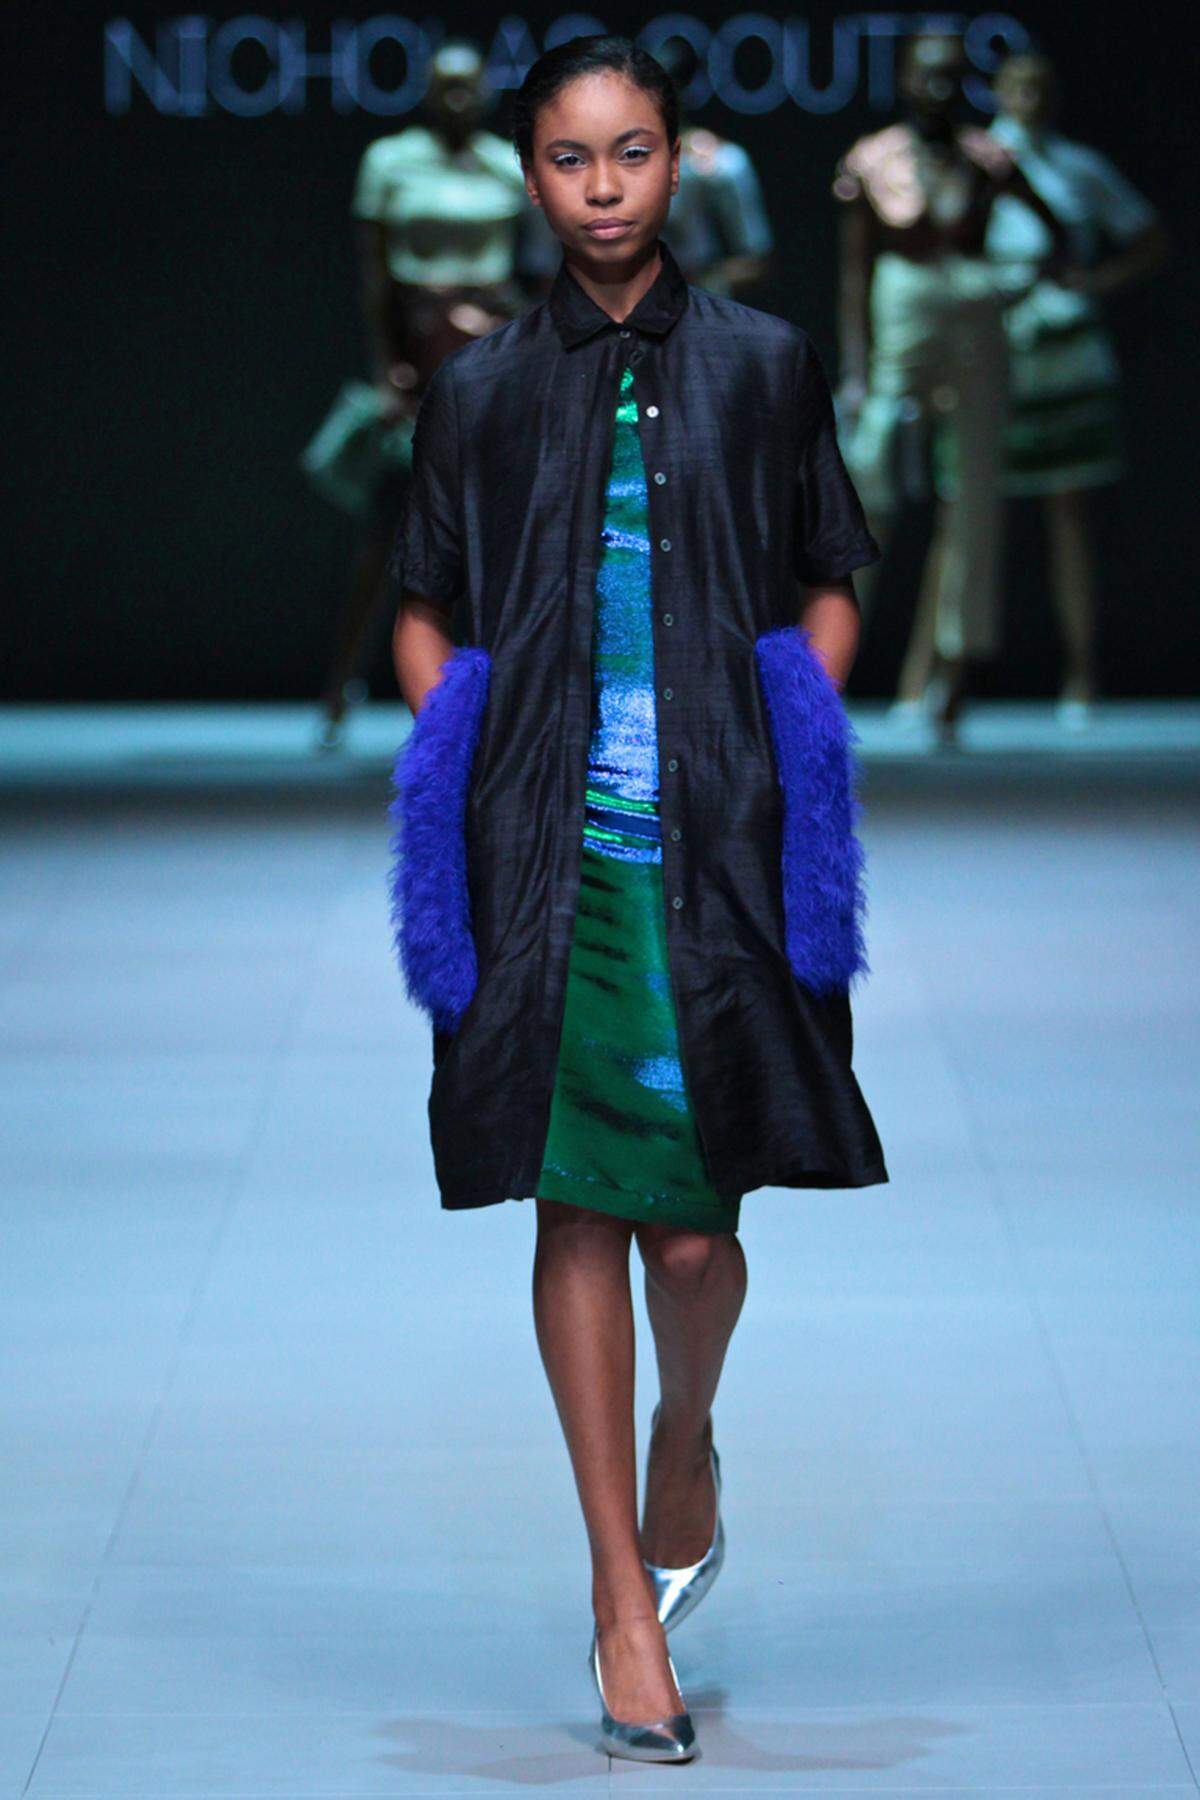 Coutts Städter-Outfits schließen sich dem unsichtbaren Faden der Modewoche in Kapstadt an, der da heißt: "Afropolitan". Der von der Autorin Taiye Selasi konstruierte Begriff beschreibt das moderne, weltgewandte Afrika.